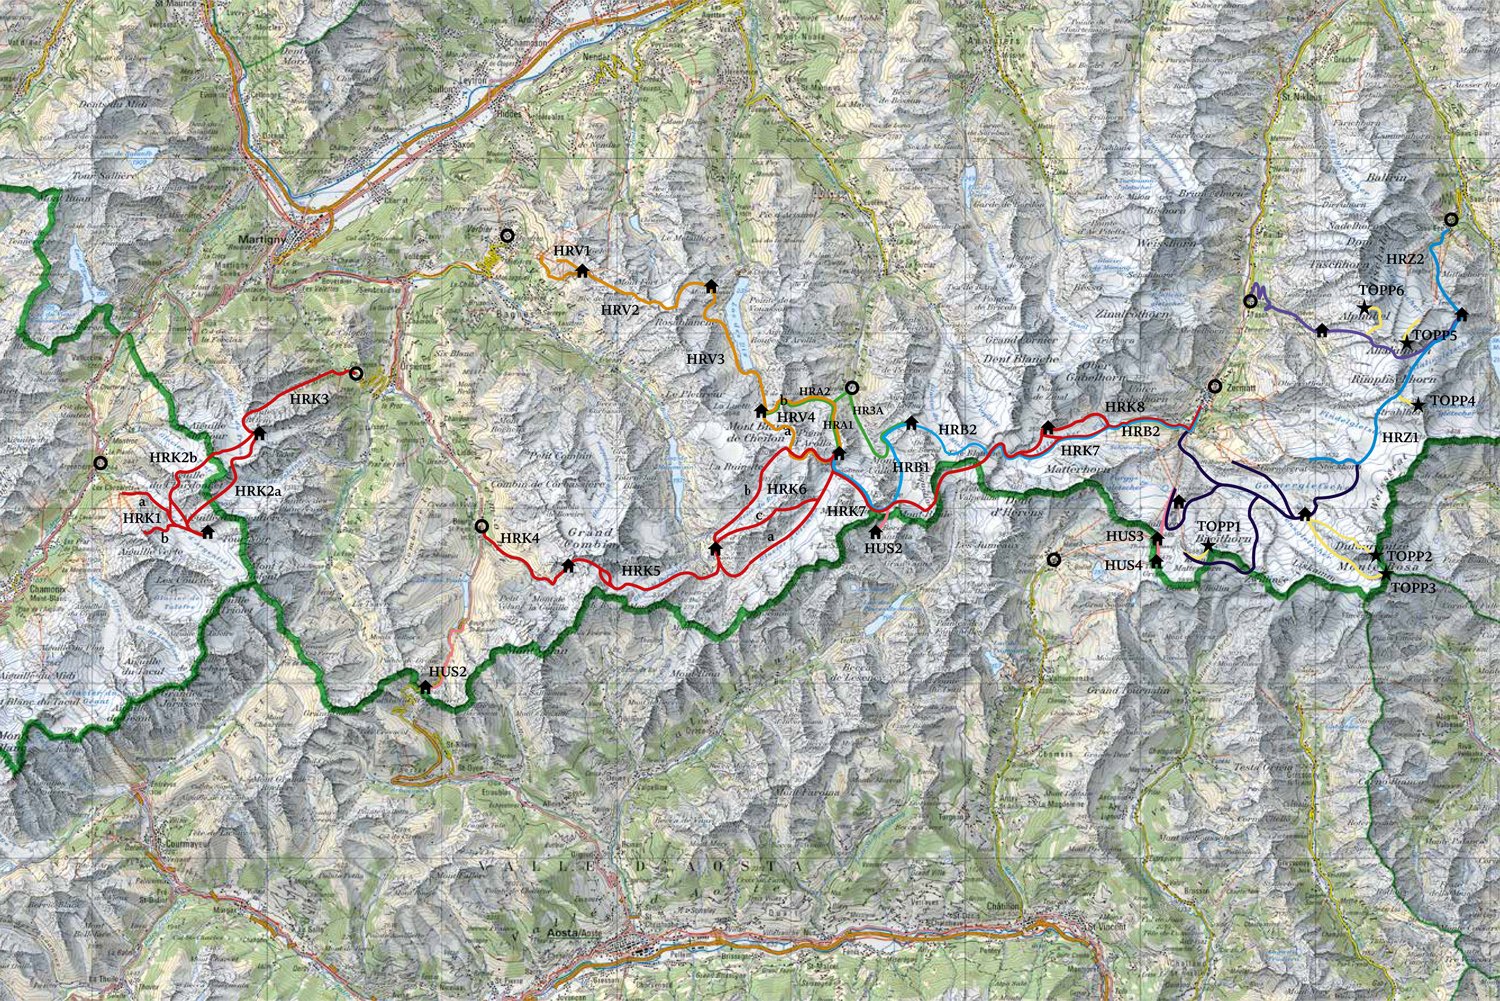 Haute Route - På ski gjennom Alpene